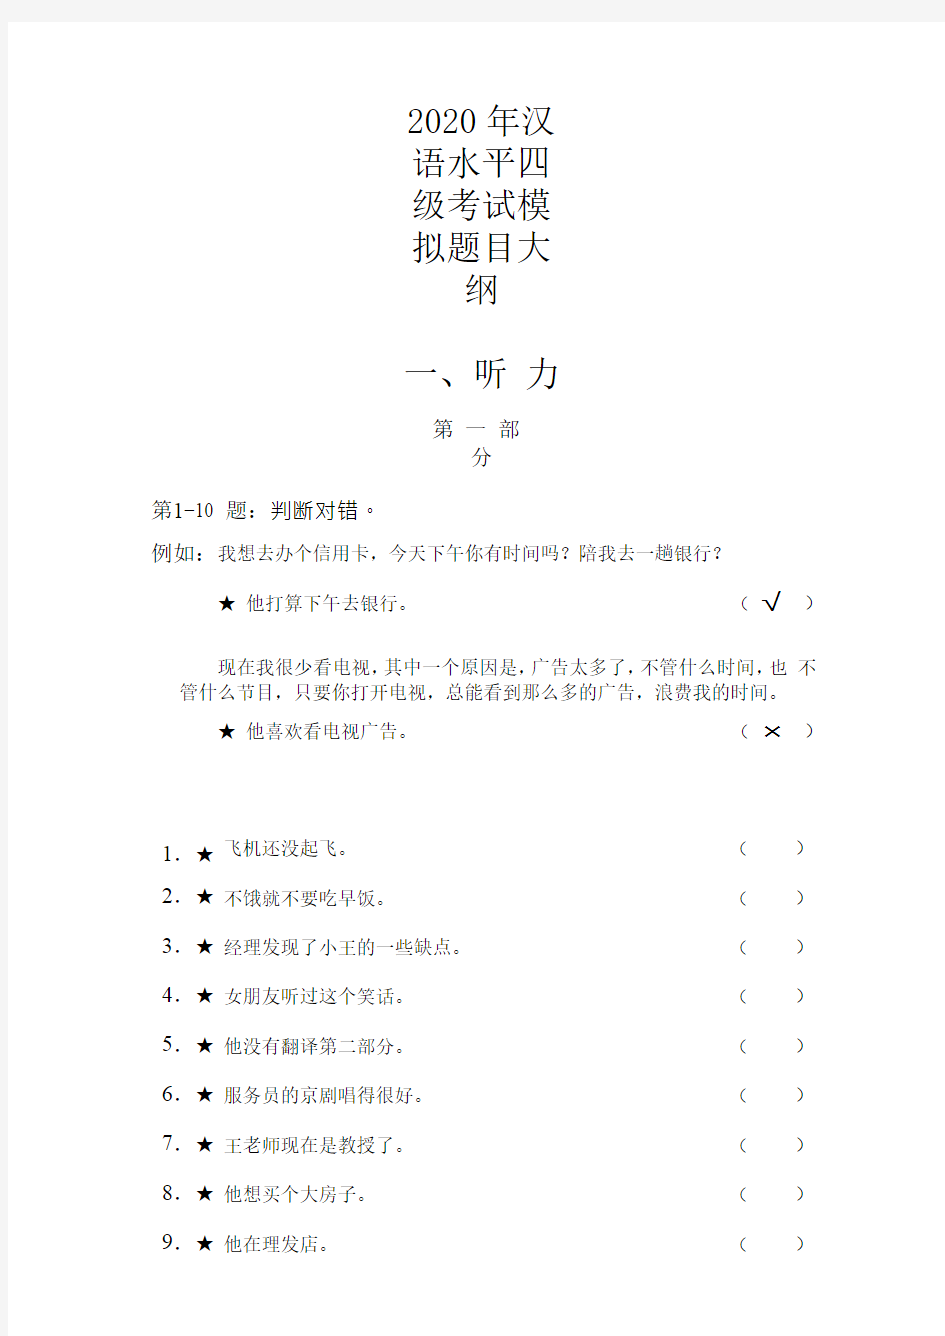 2020年汉语水平四级考试模拟题目大纲